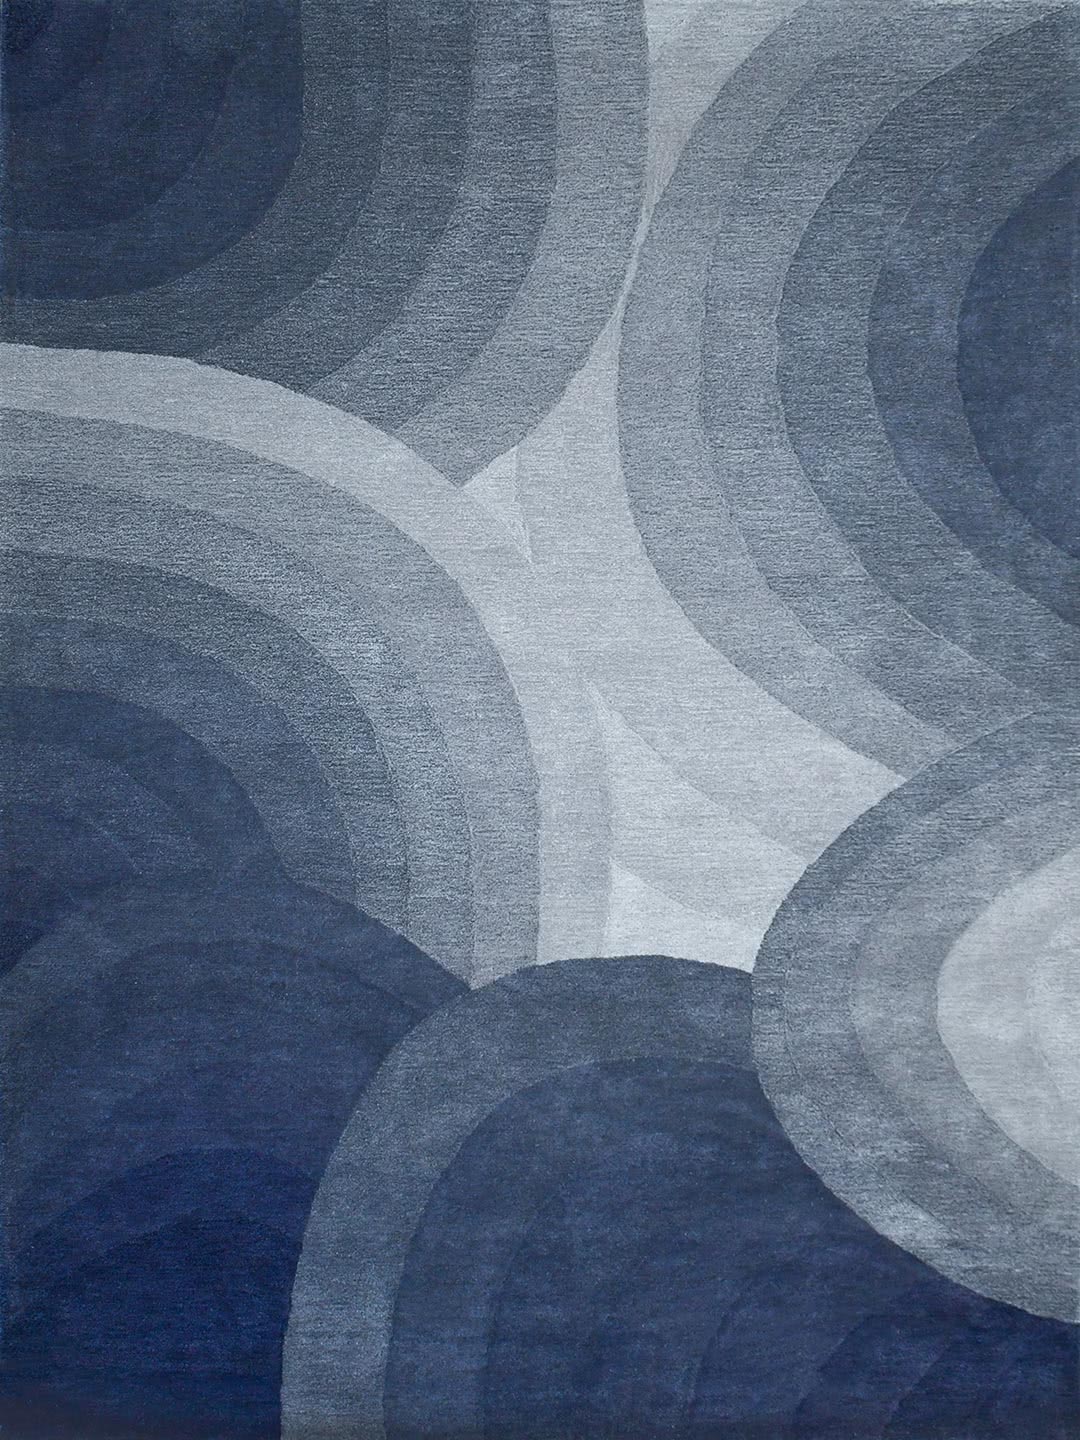 Orbit Windsky handmade rug 100% wool in blue grey tones